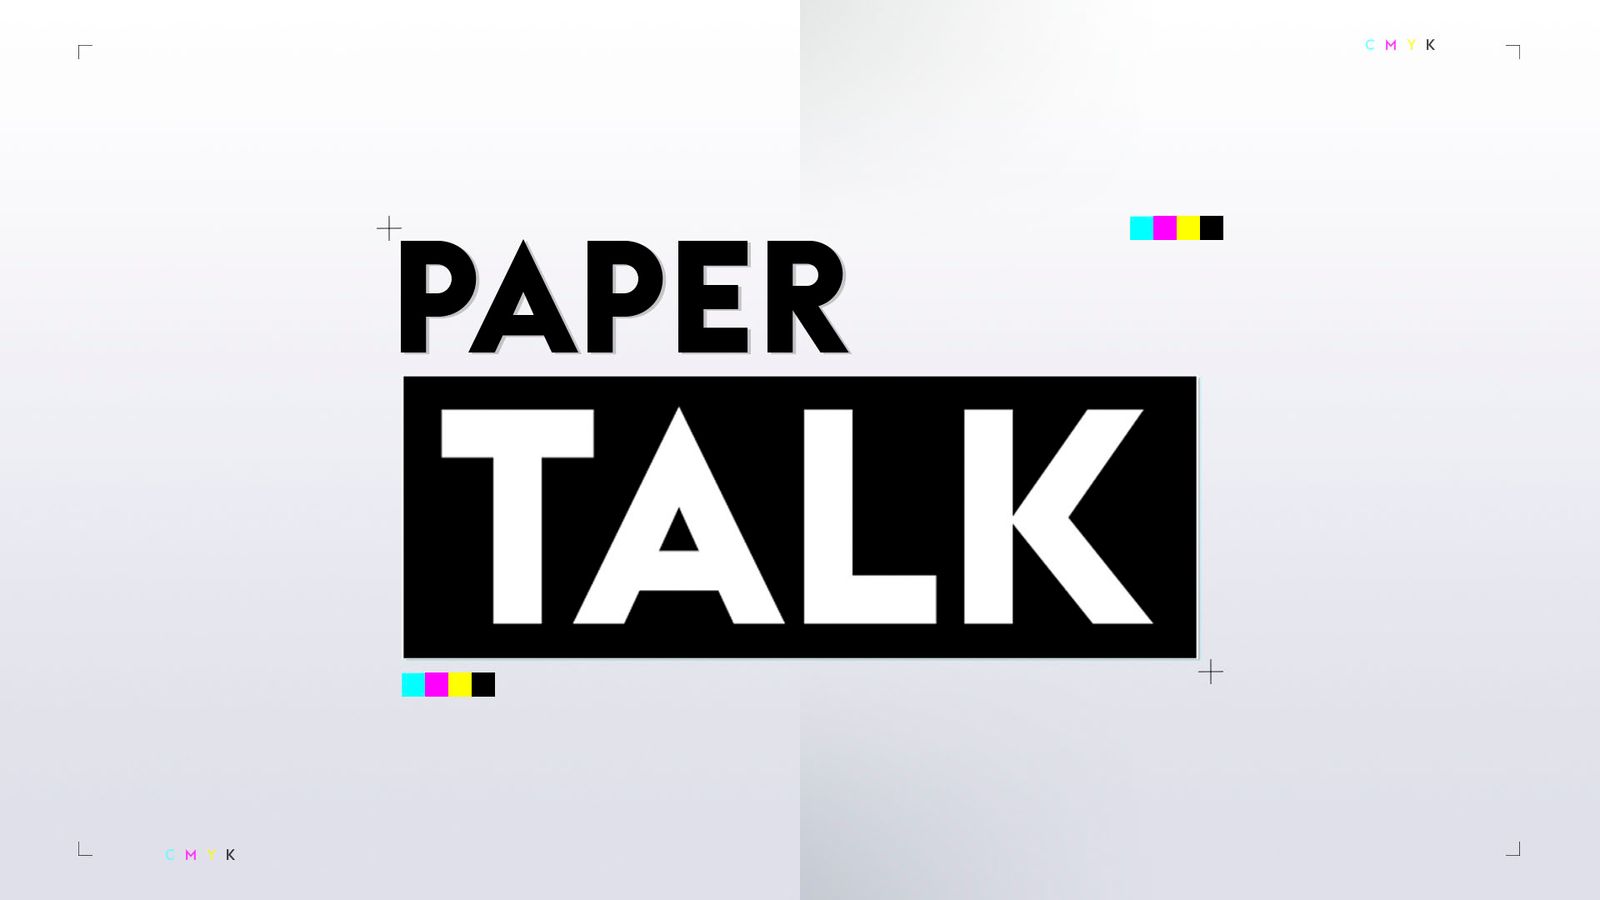 คาลวิน ฟิลลิปส์เชื่อมโยงกับการย้ายไปยังยูเวนตุสในเดือนมกราคม – Paper Talk |  ข่าวฟุตบอล